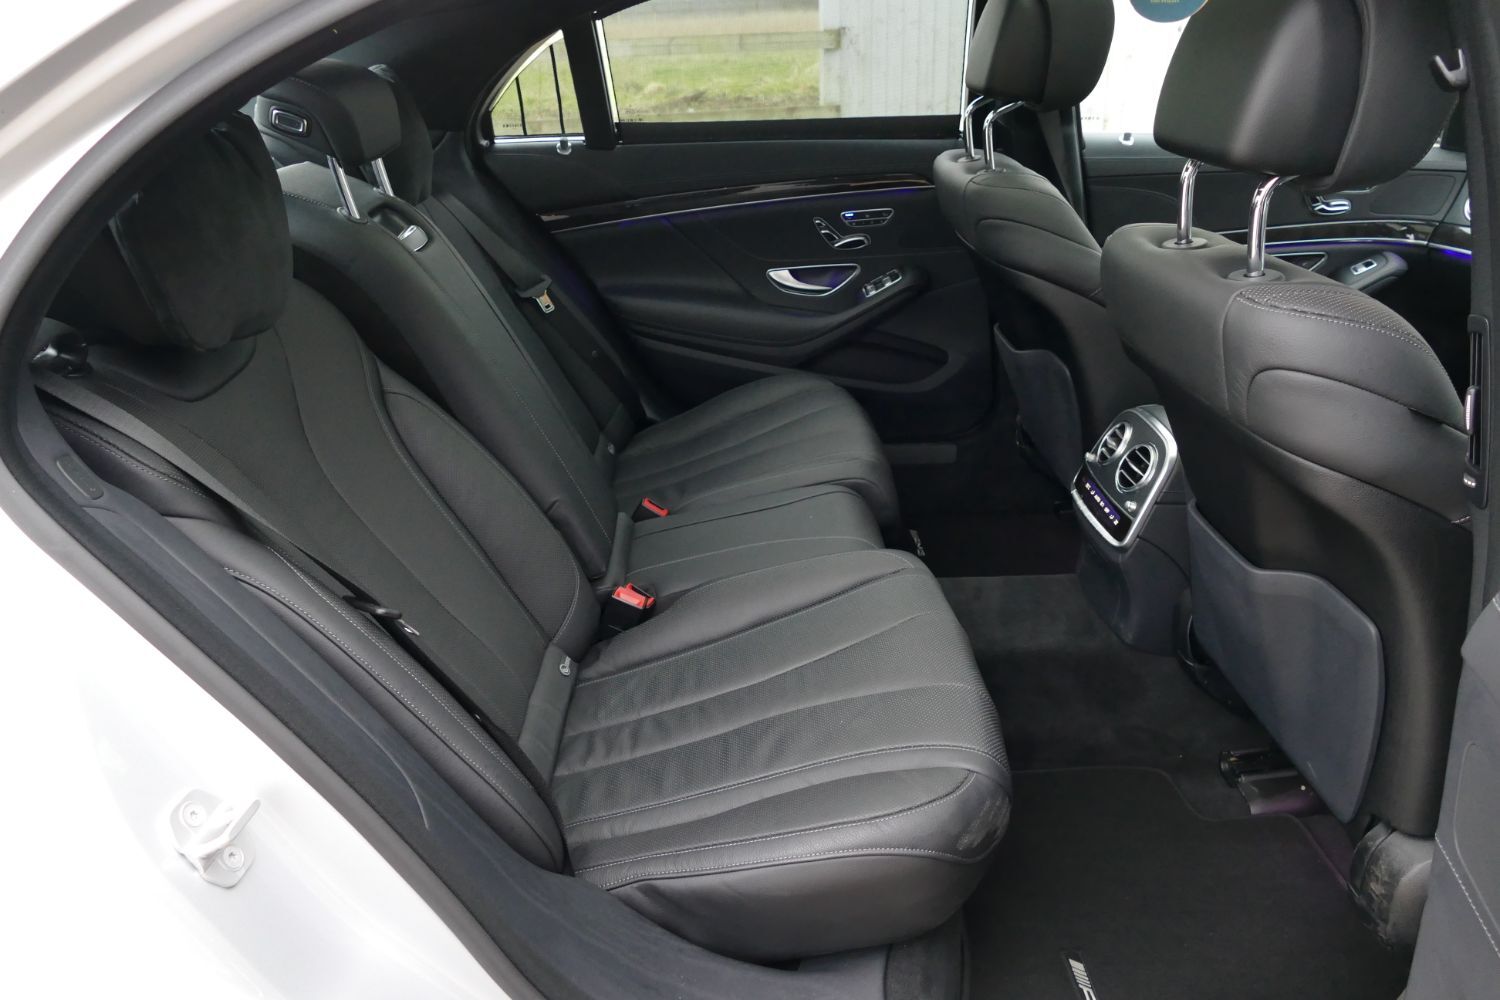 مرسيدس بنز S 63 AMG interior - Seats